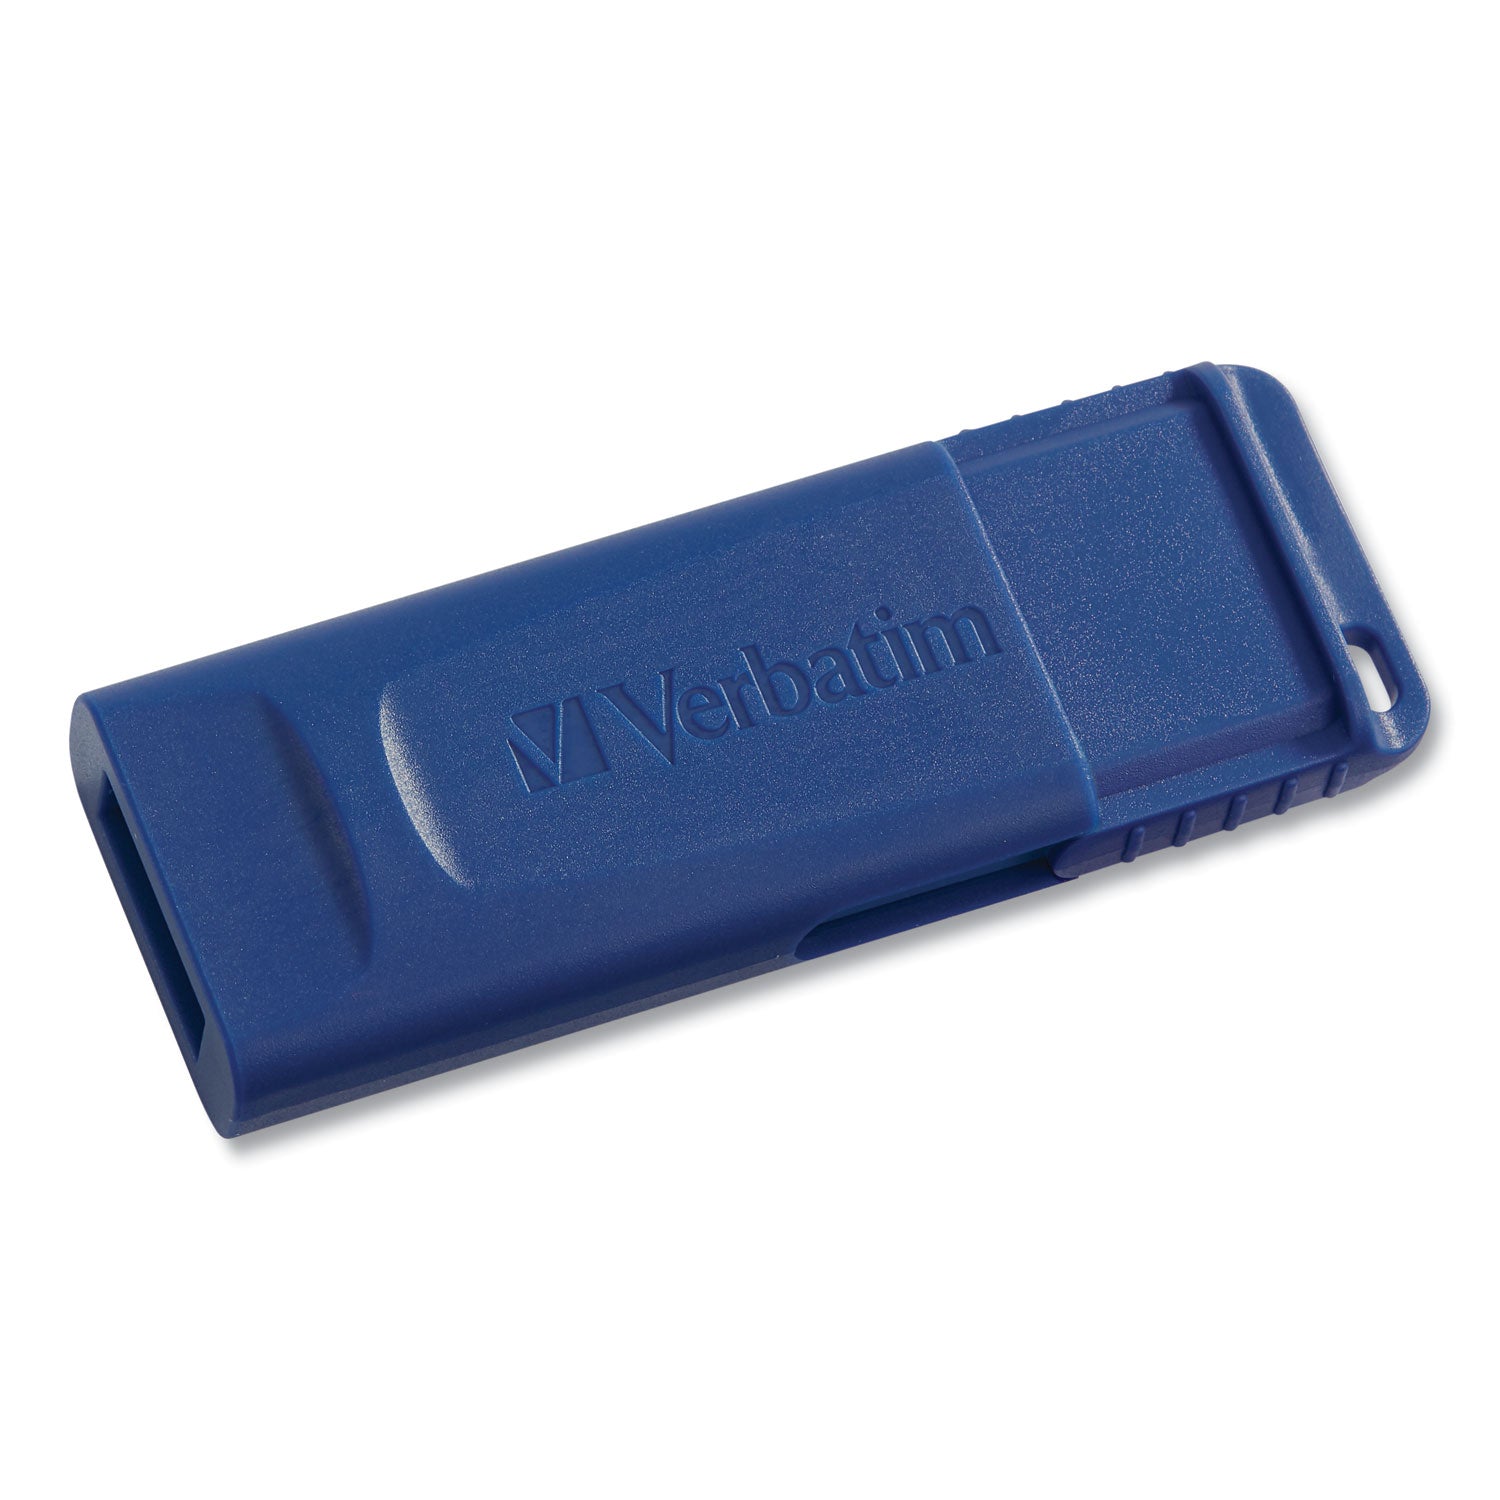 Classic USB 2.0 Flash Drive, 16 GB, Blue - 4